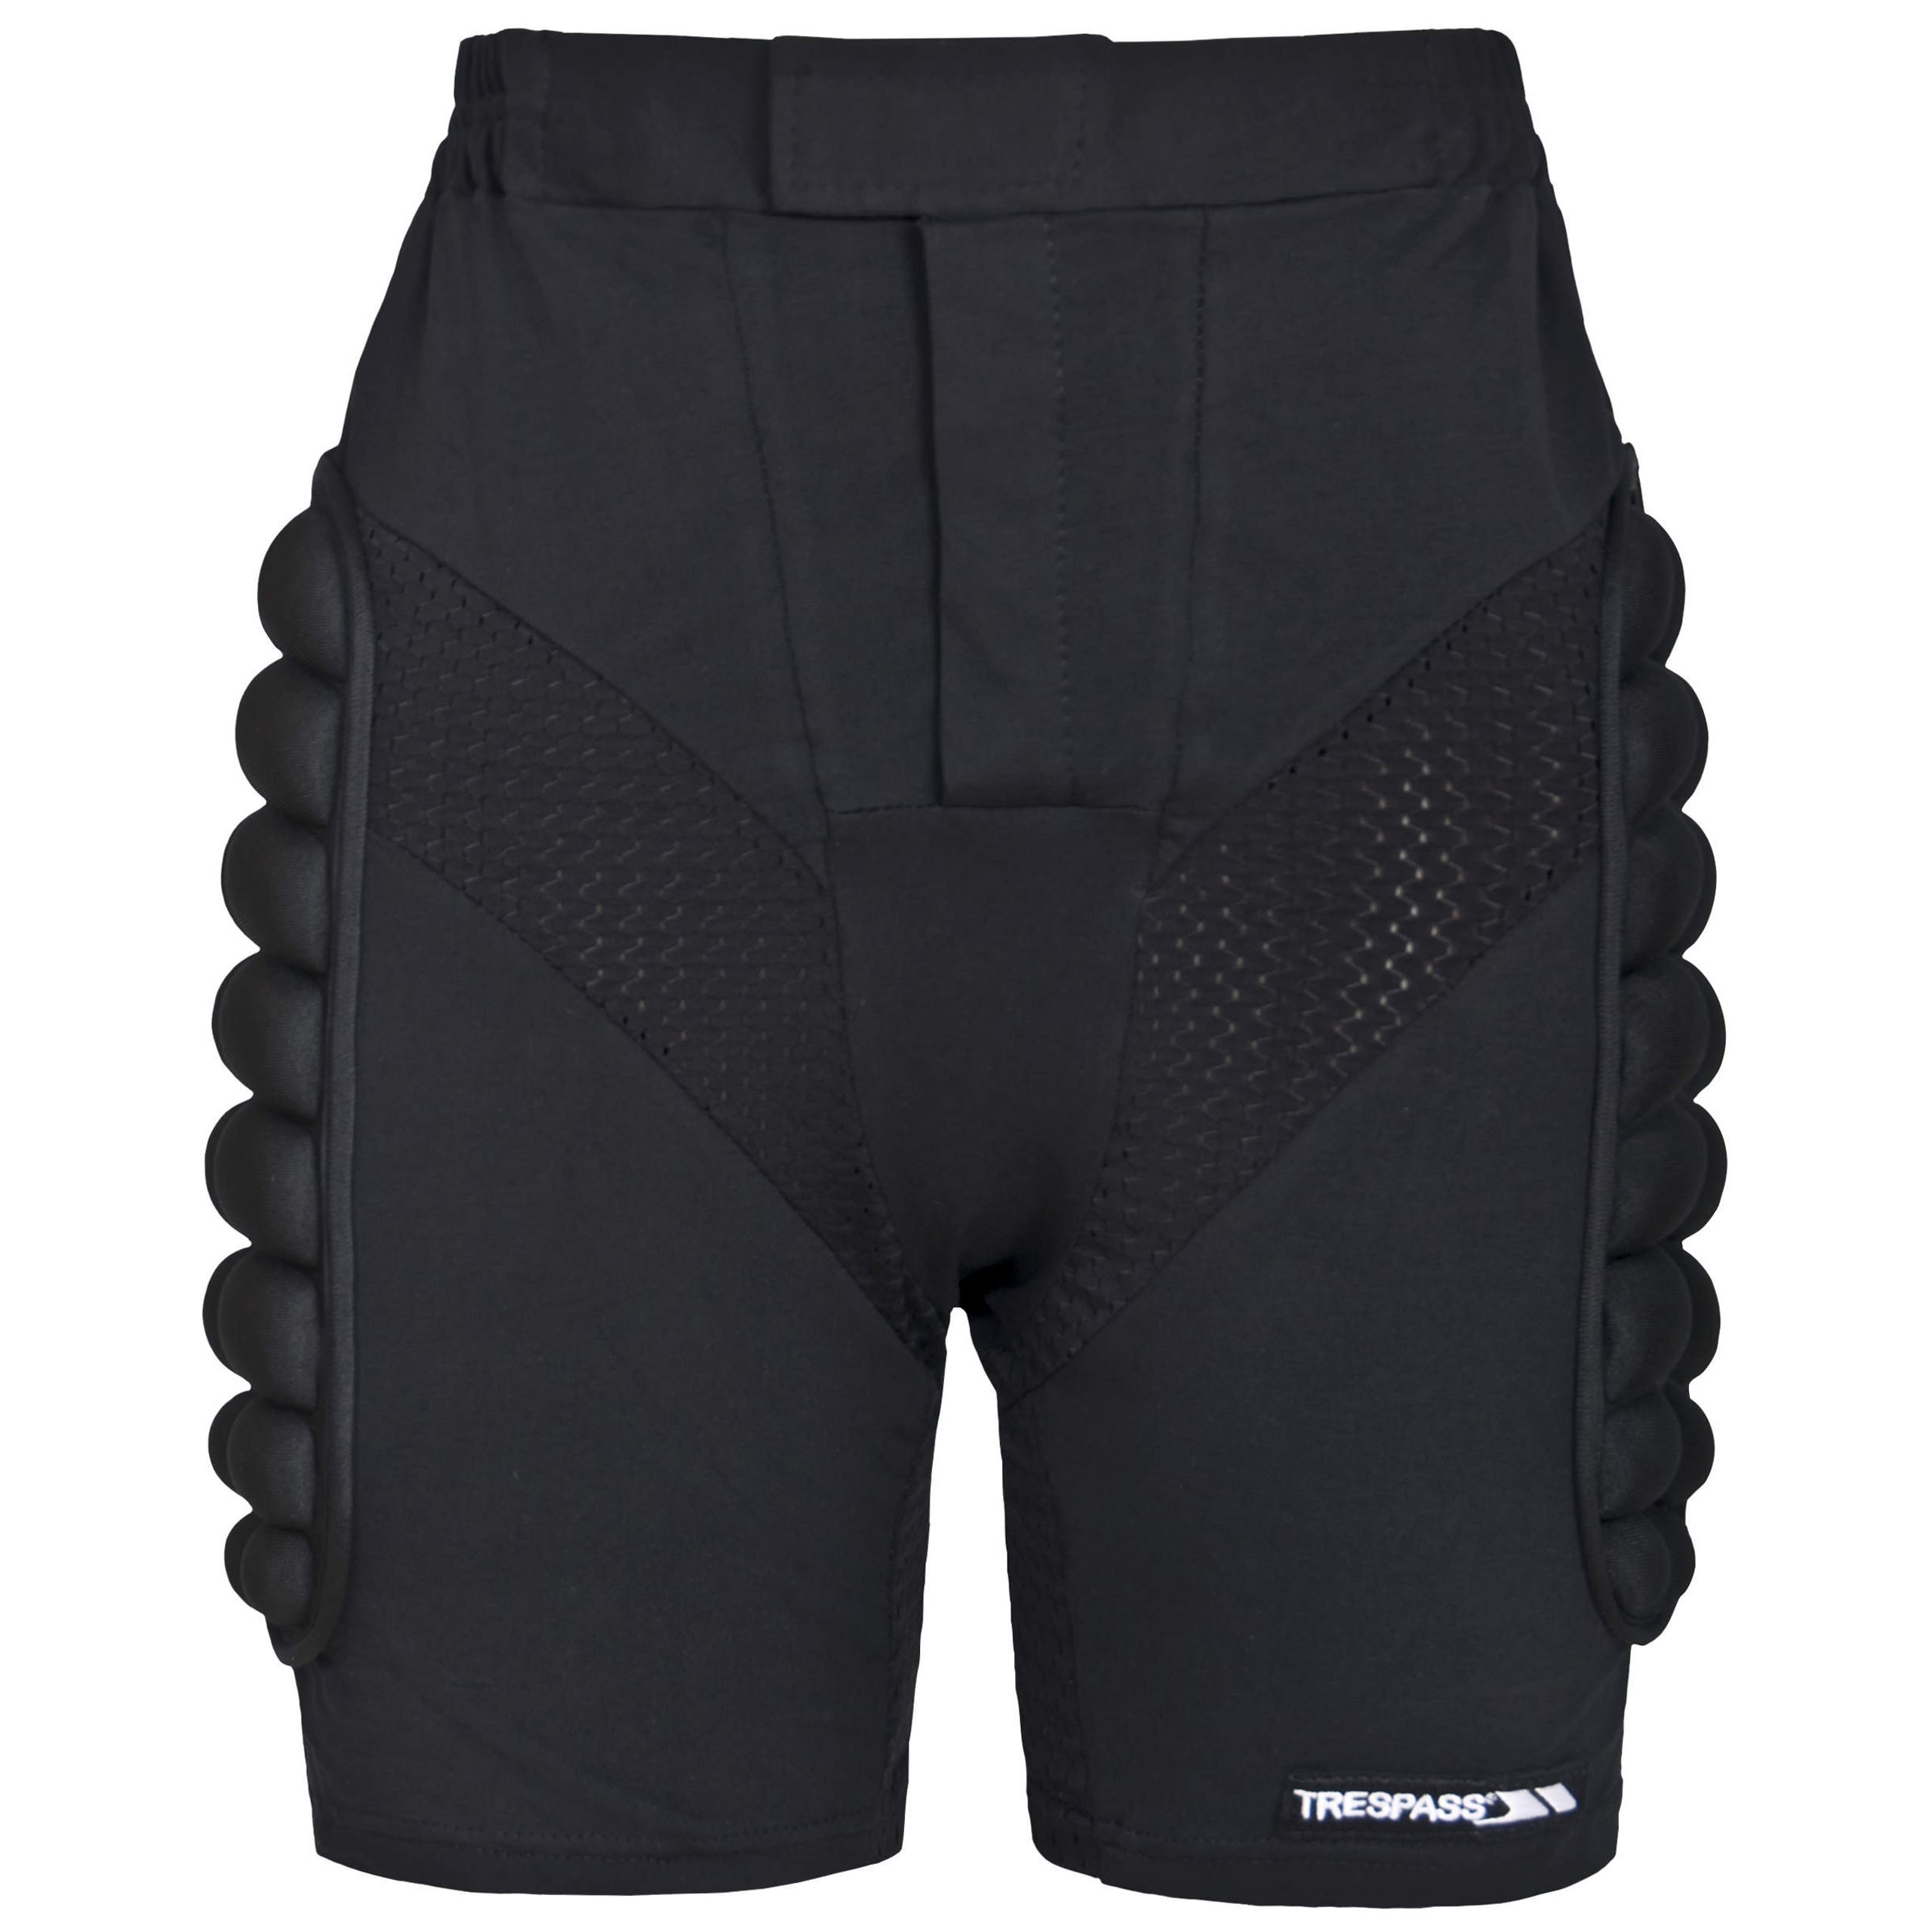 Impact Unisex Padded Active Shorts